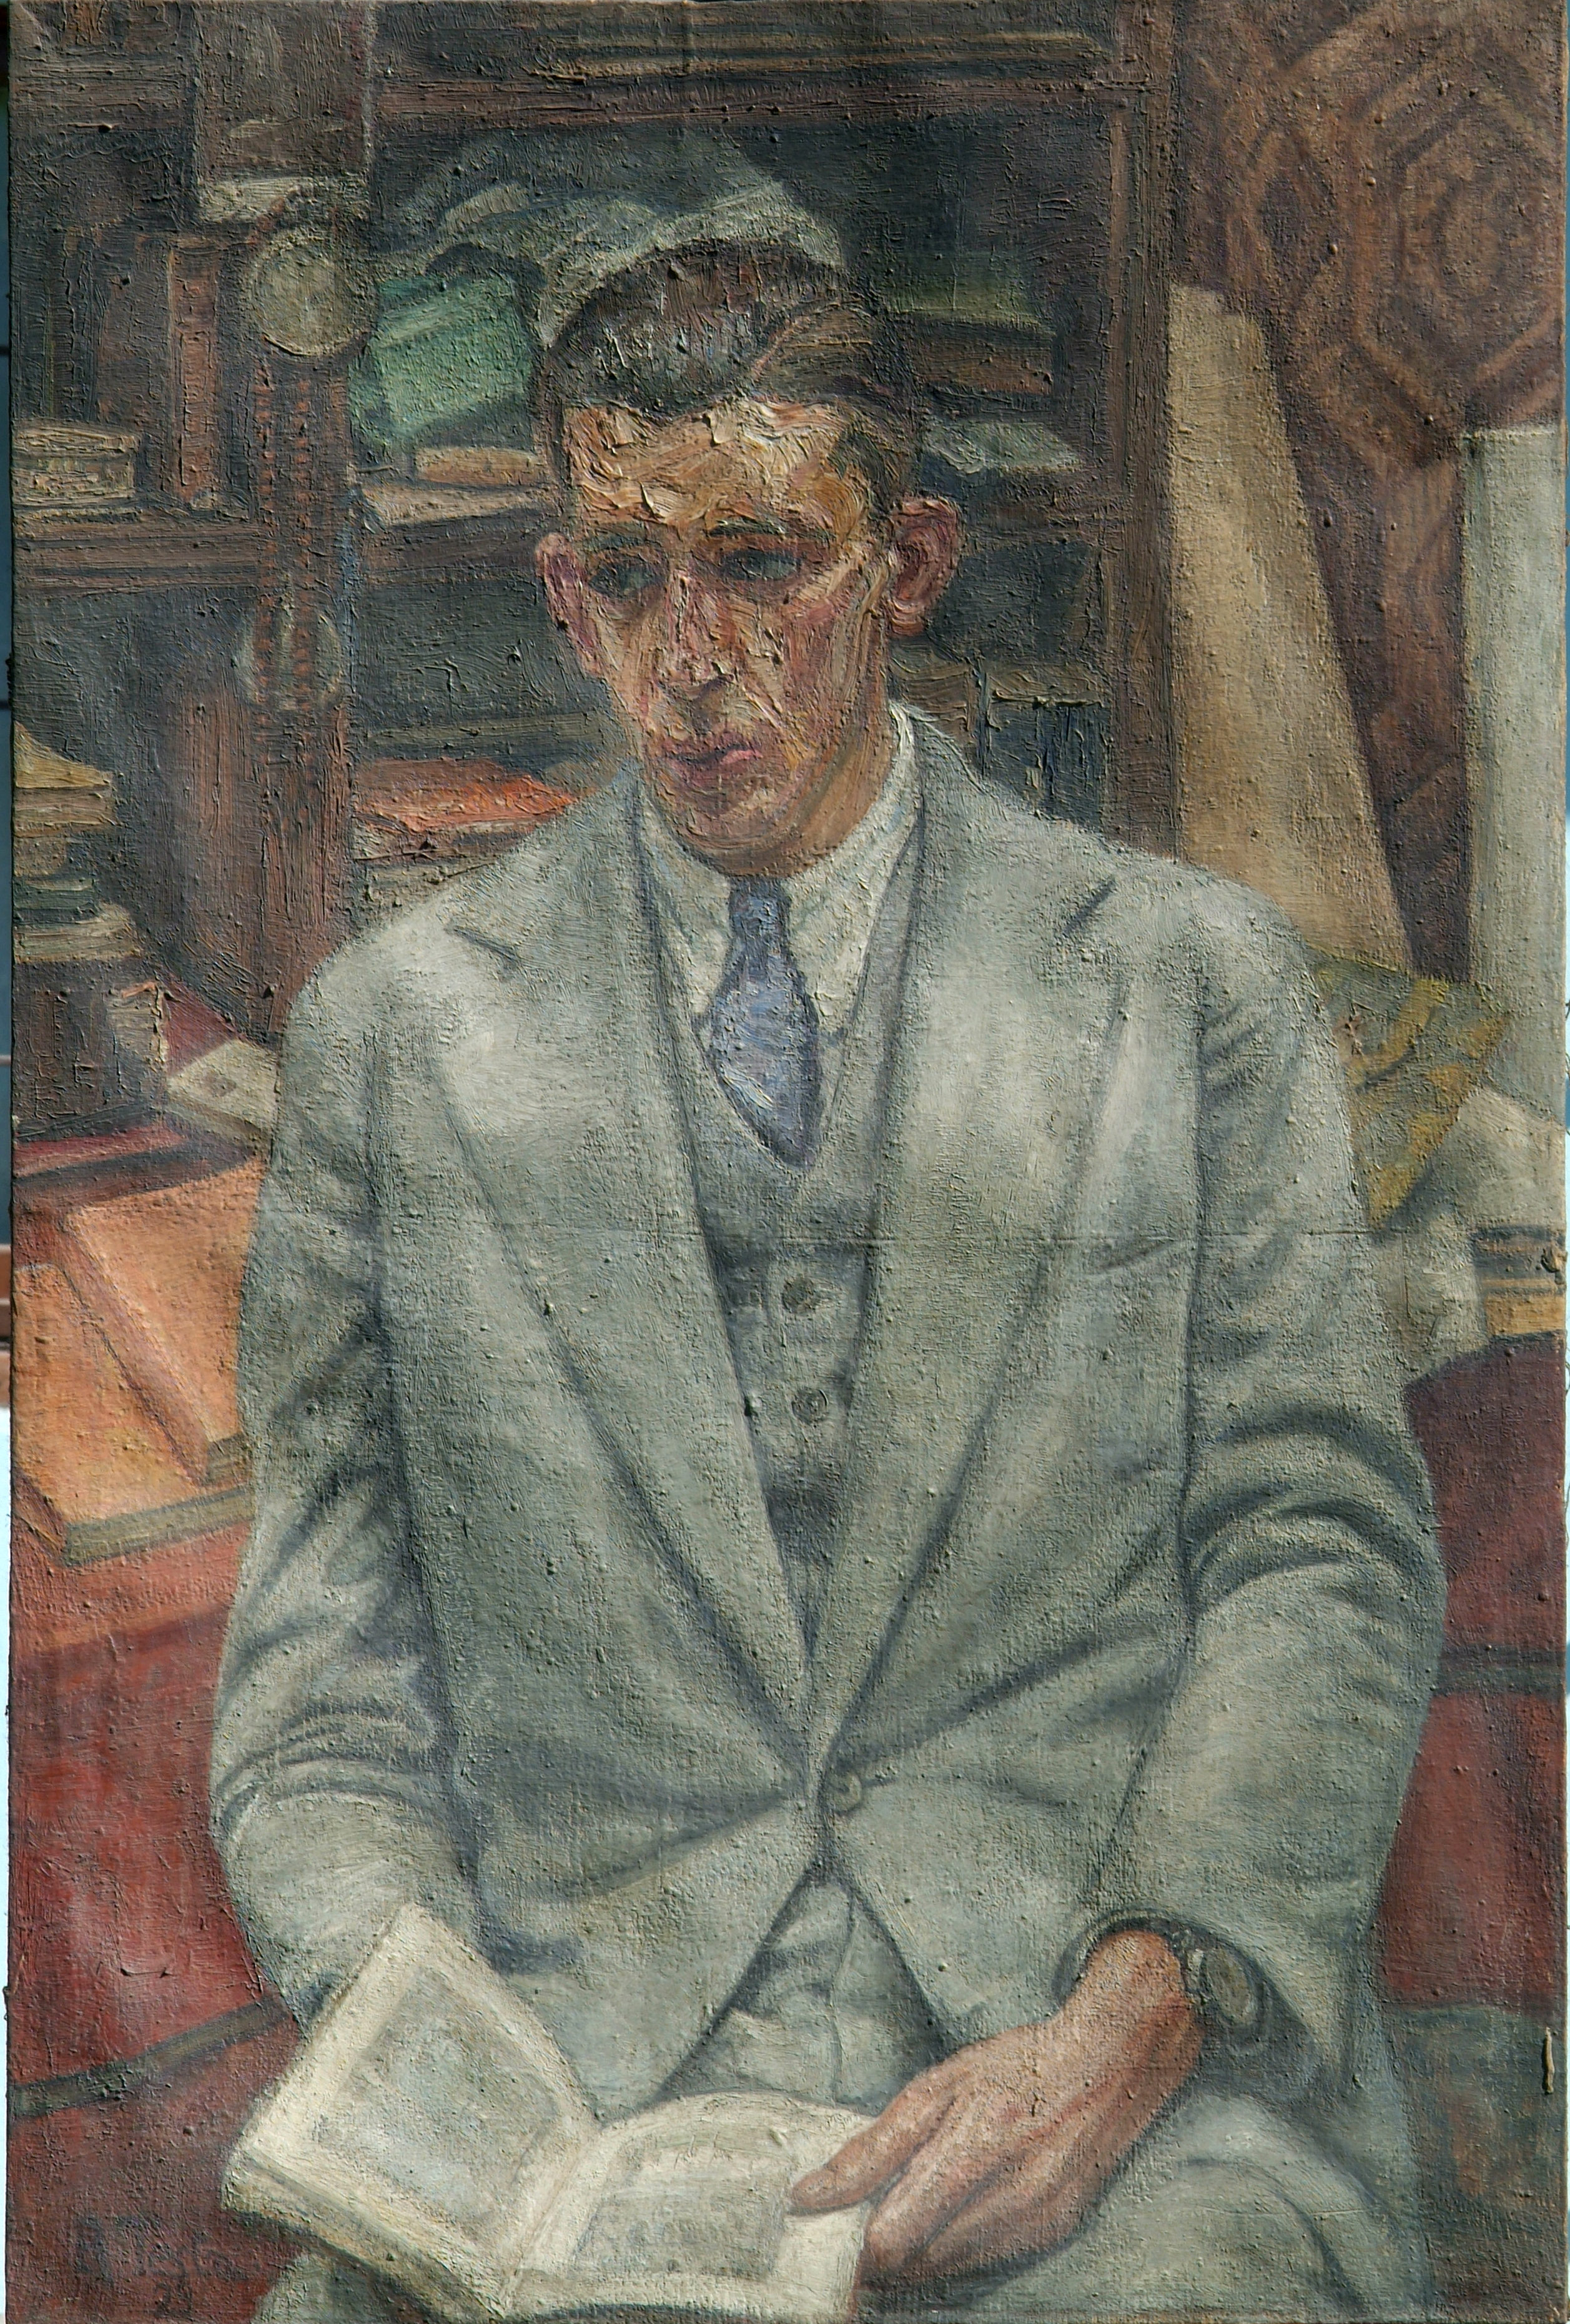 Marco Dodero, olio su tela, cm 80 x 120, 1929